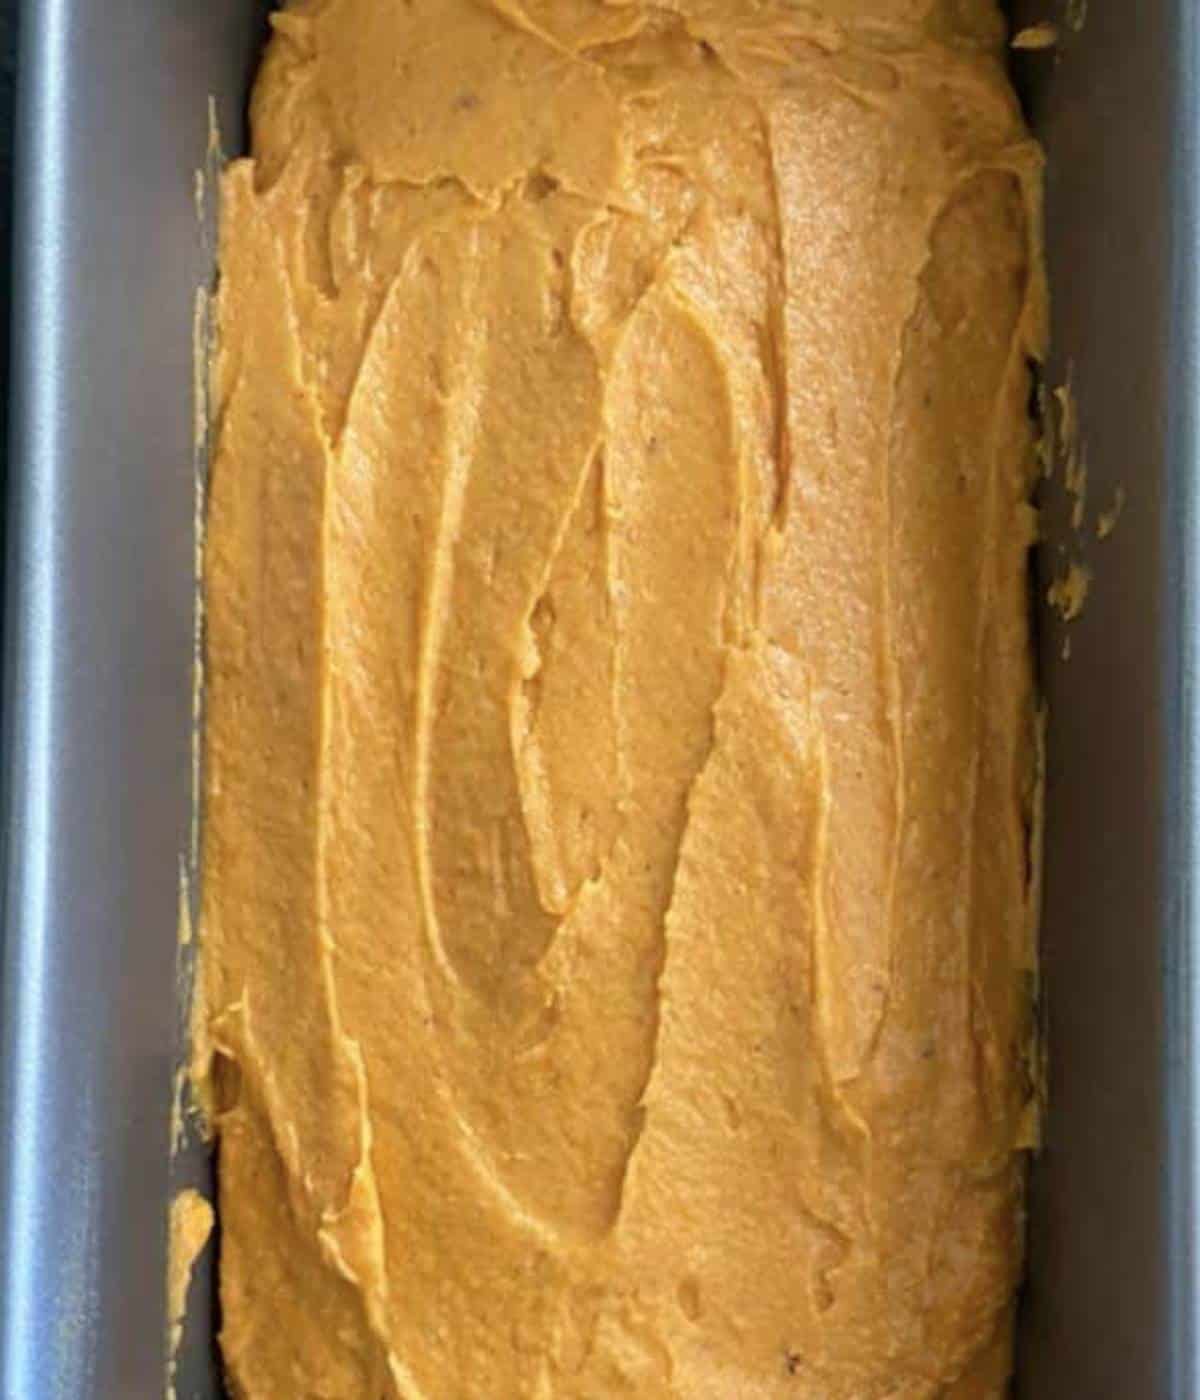 Pumpkin bread batter in pan.